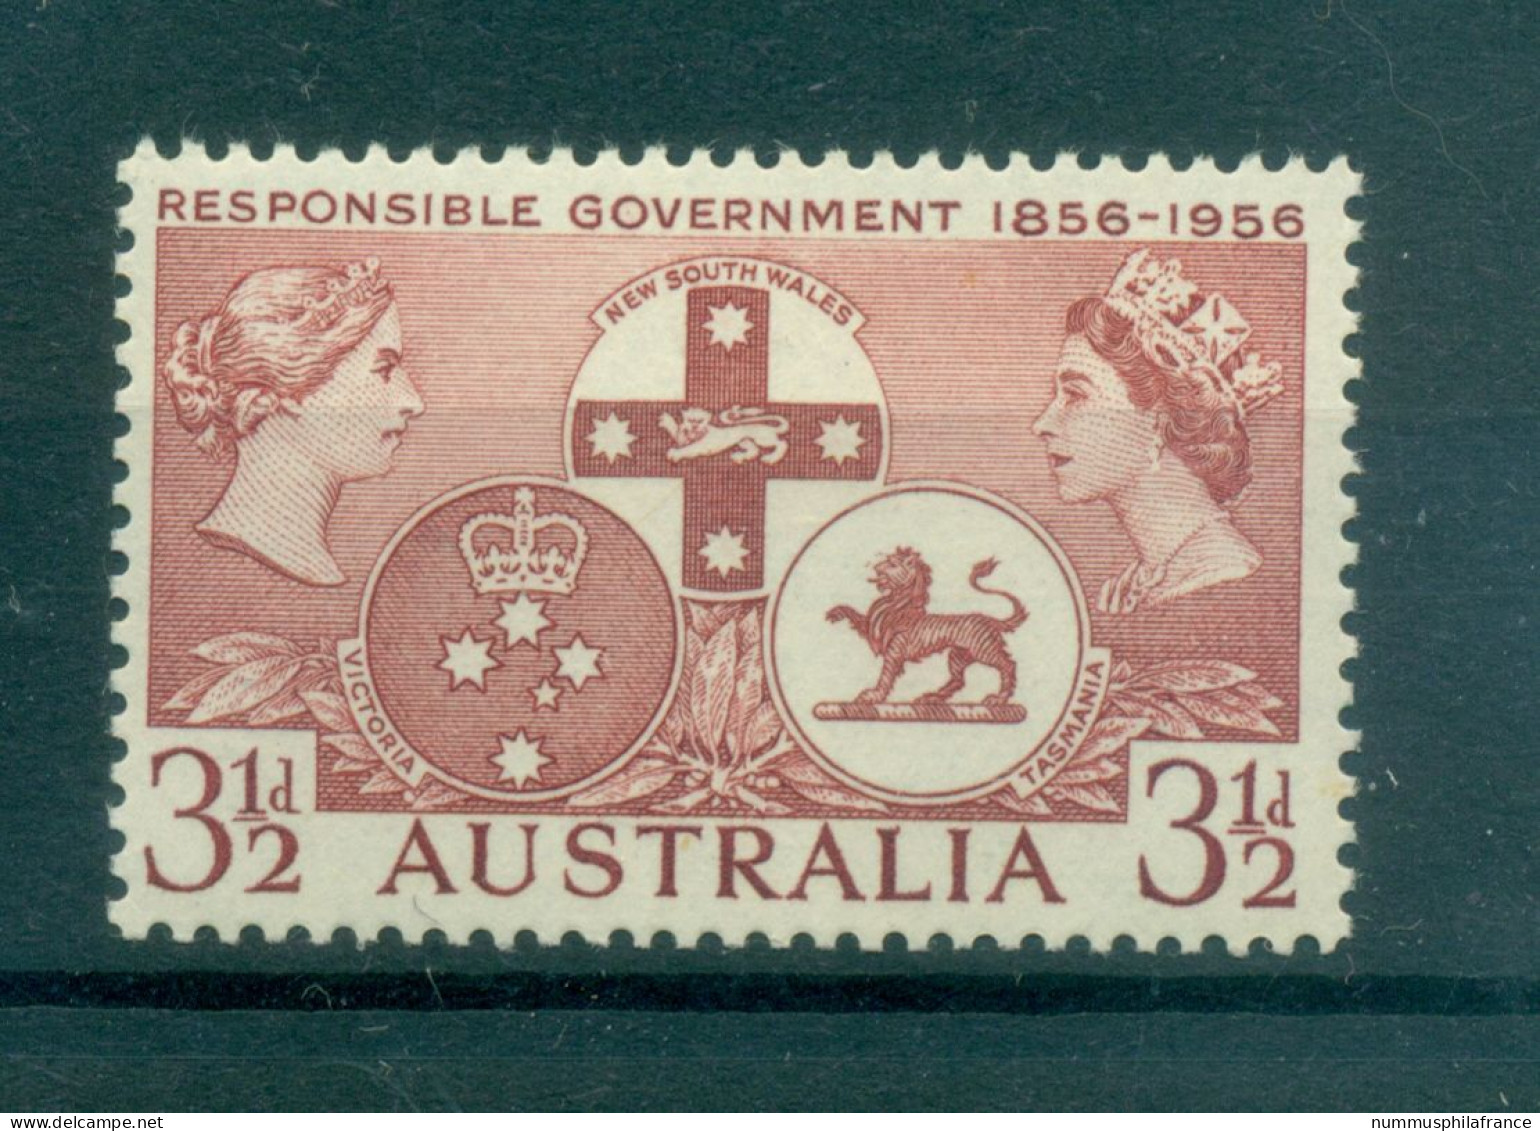 Australie 1956 - Y & T N. 230 - Gouvernements Responsables (Michel N. 262) - Mint Stamps